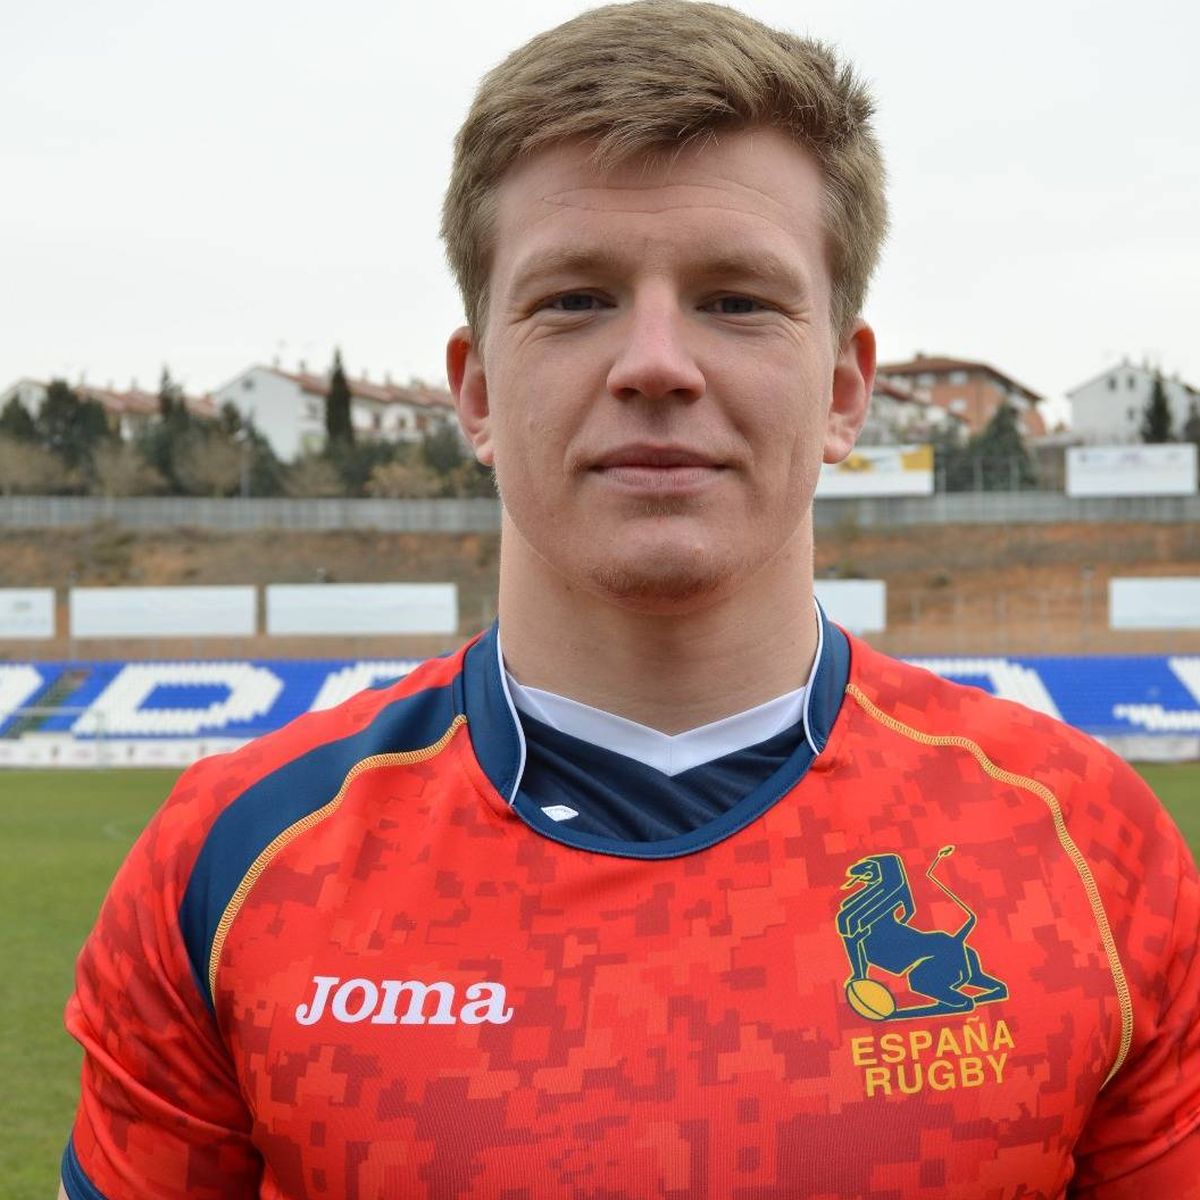 Joshua Peters, una joya pule en el rugby inglés ha elegido jugar por España